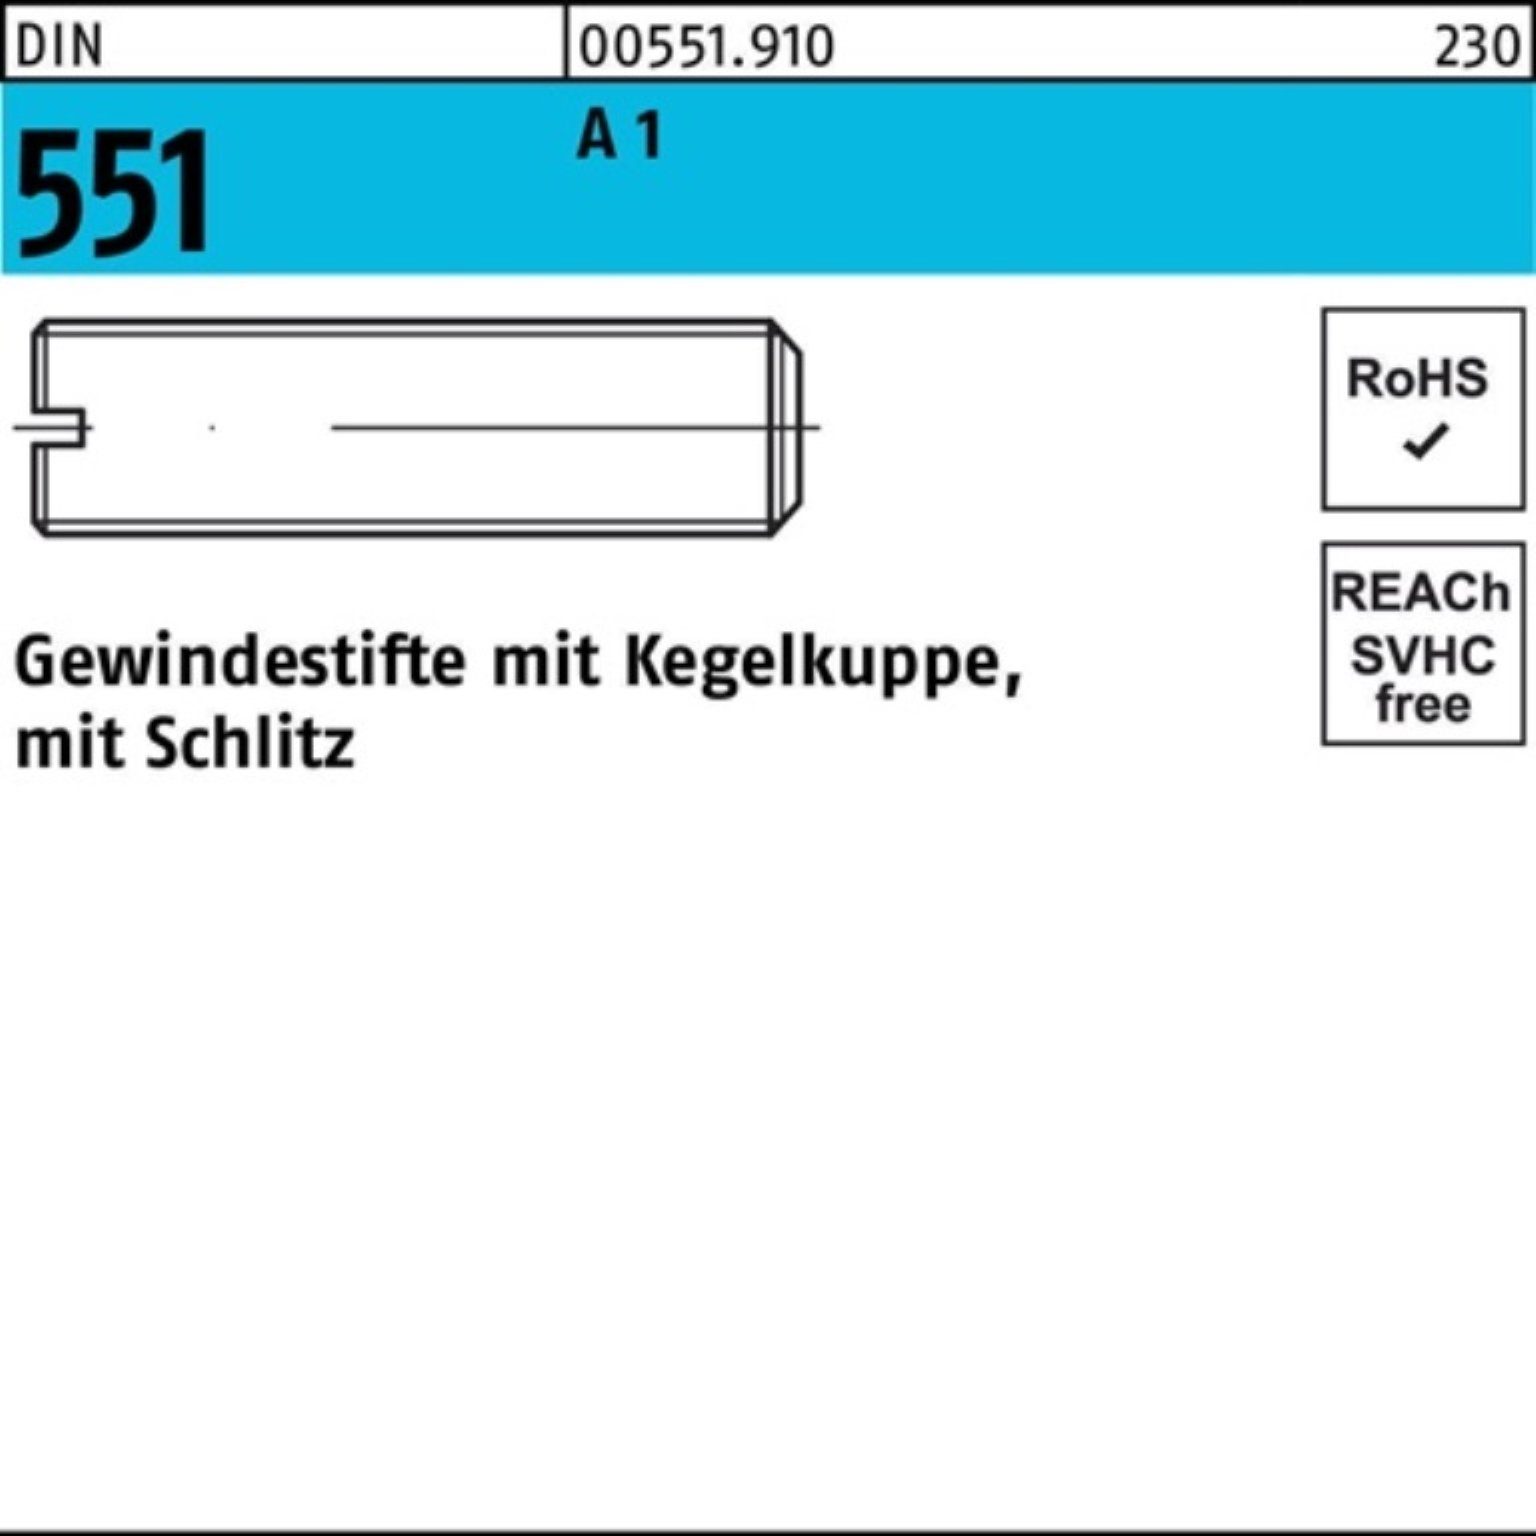 M5x 5 DIN 50 Gewindestift Kegelkuppe/Schlitz 100er A1/1.4305 Pack 551 Reyher Gewindebolzen